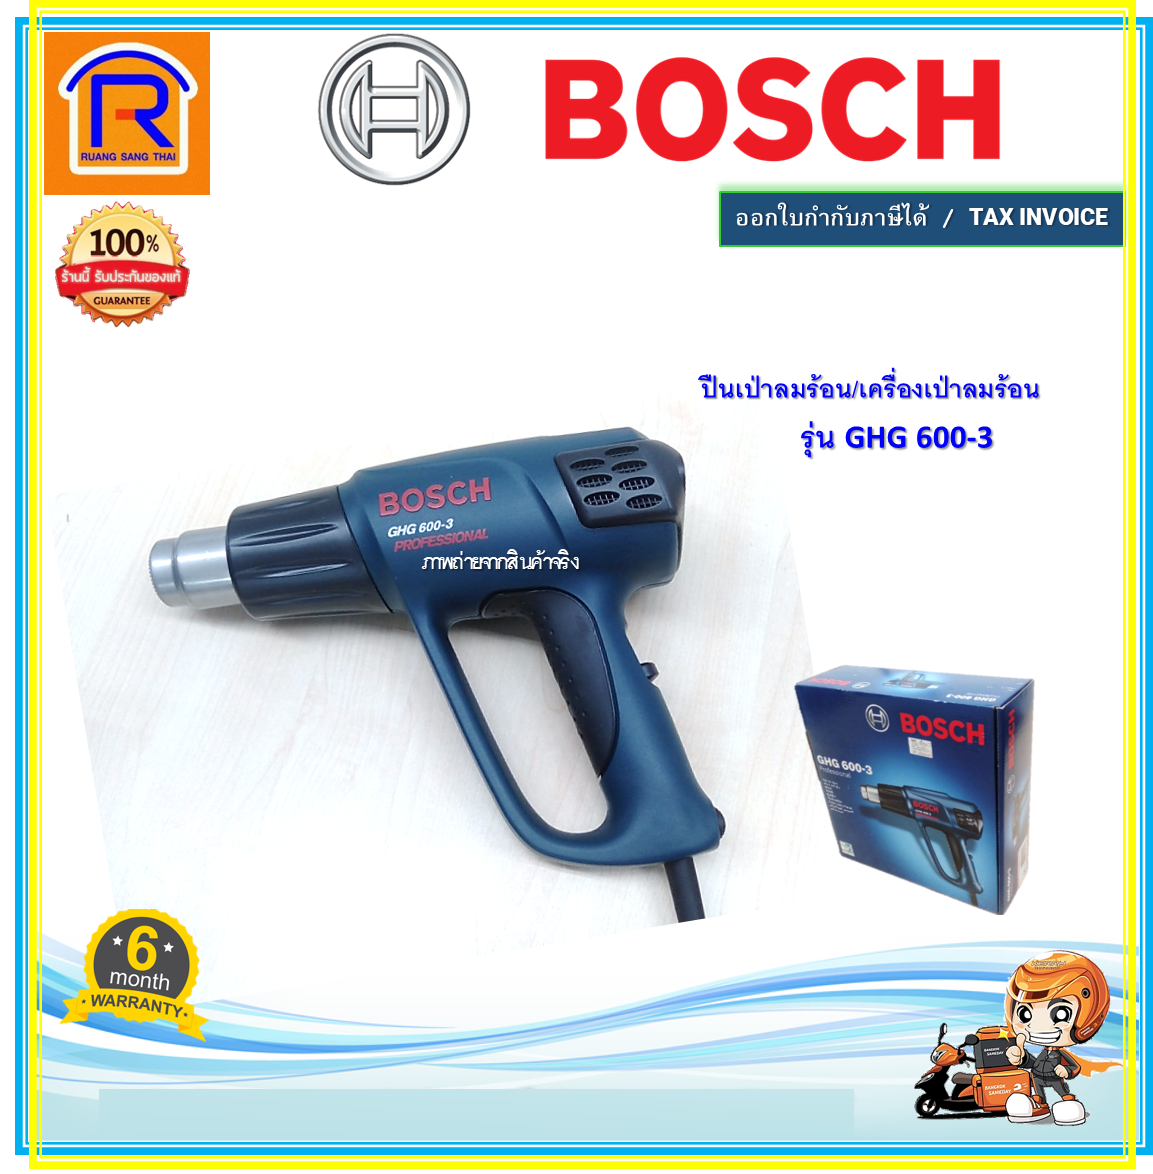 BOSCH GHG 600-3